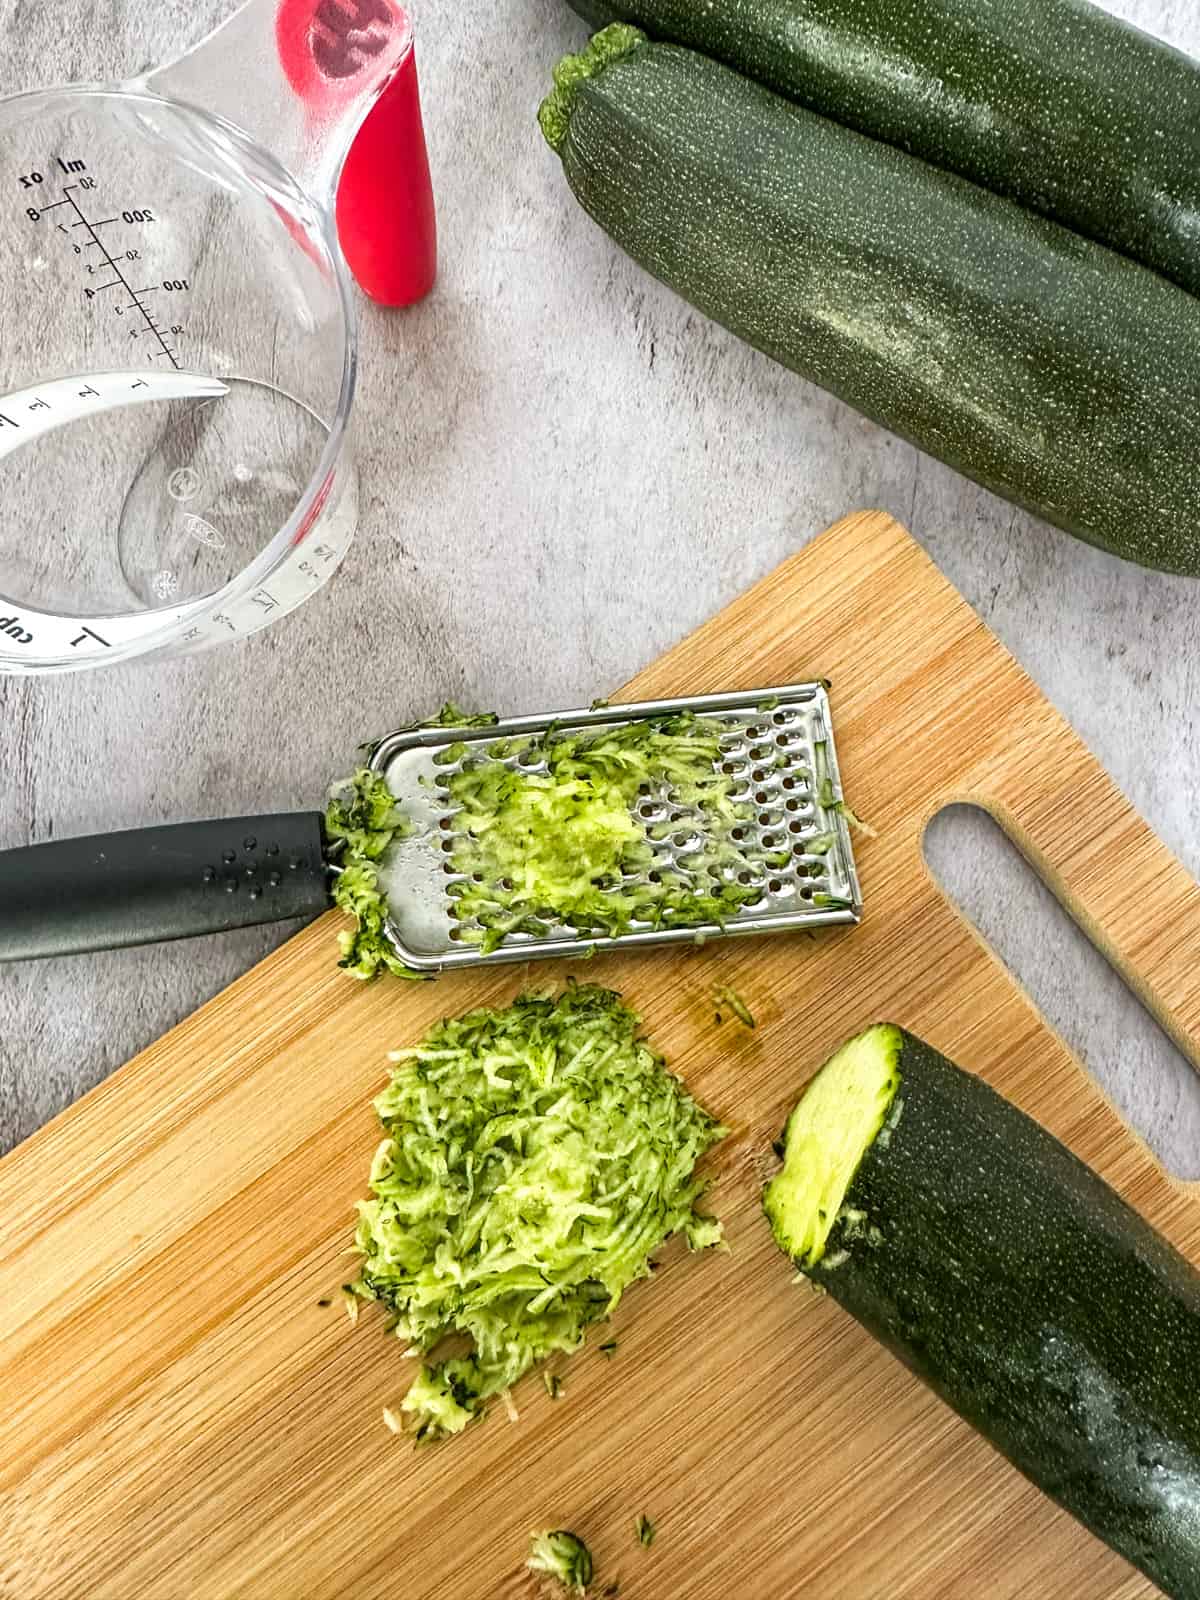 shredding zucchini on a cutting board